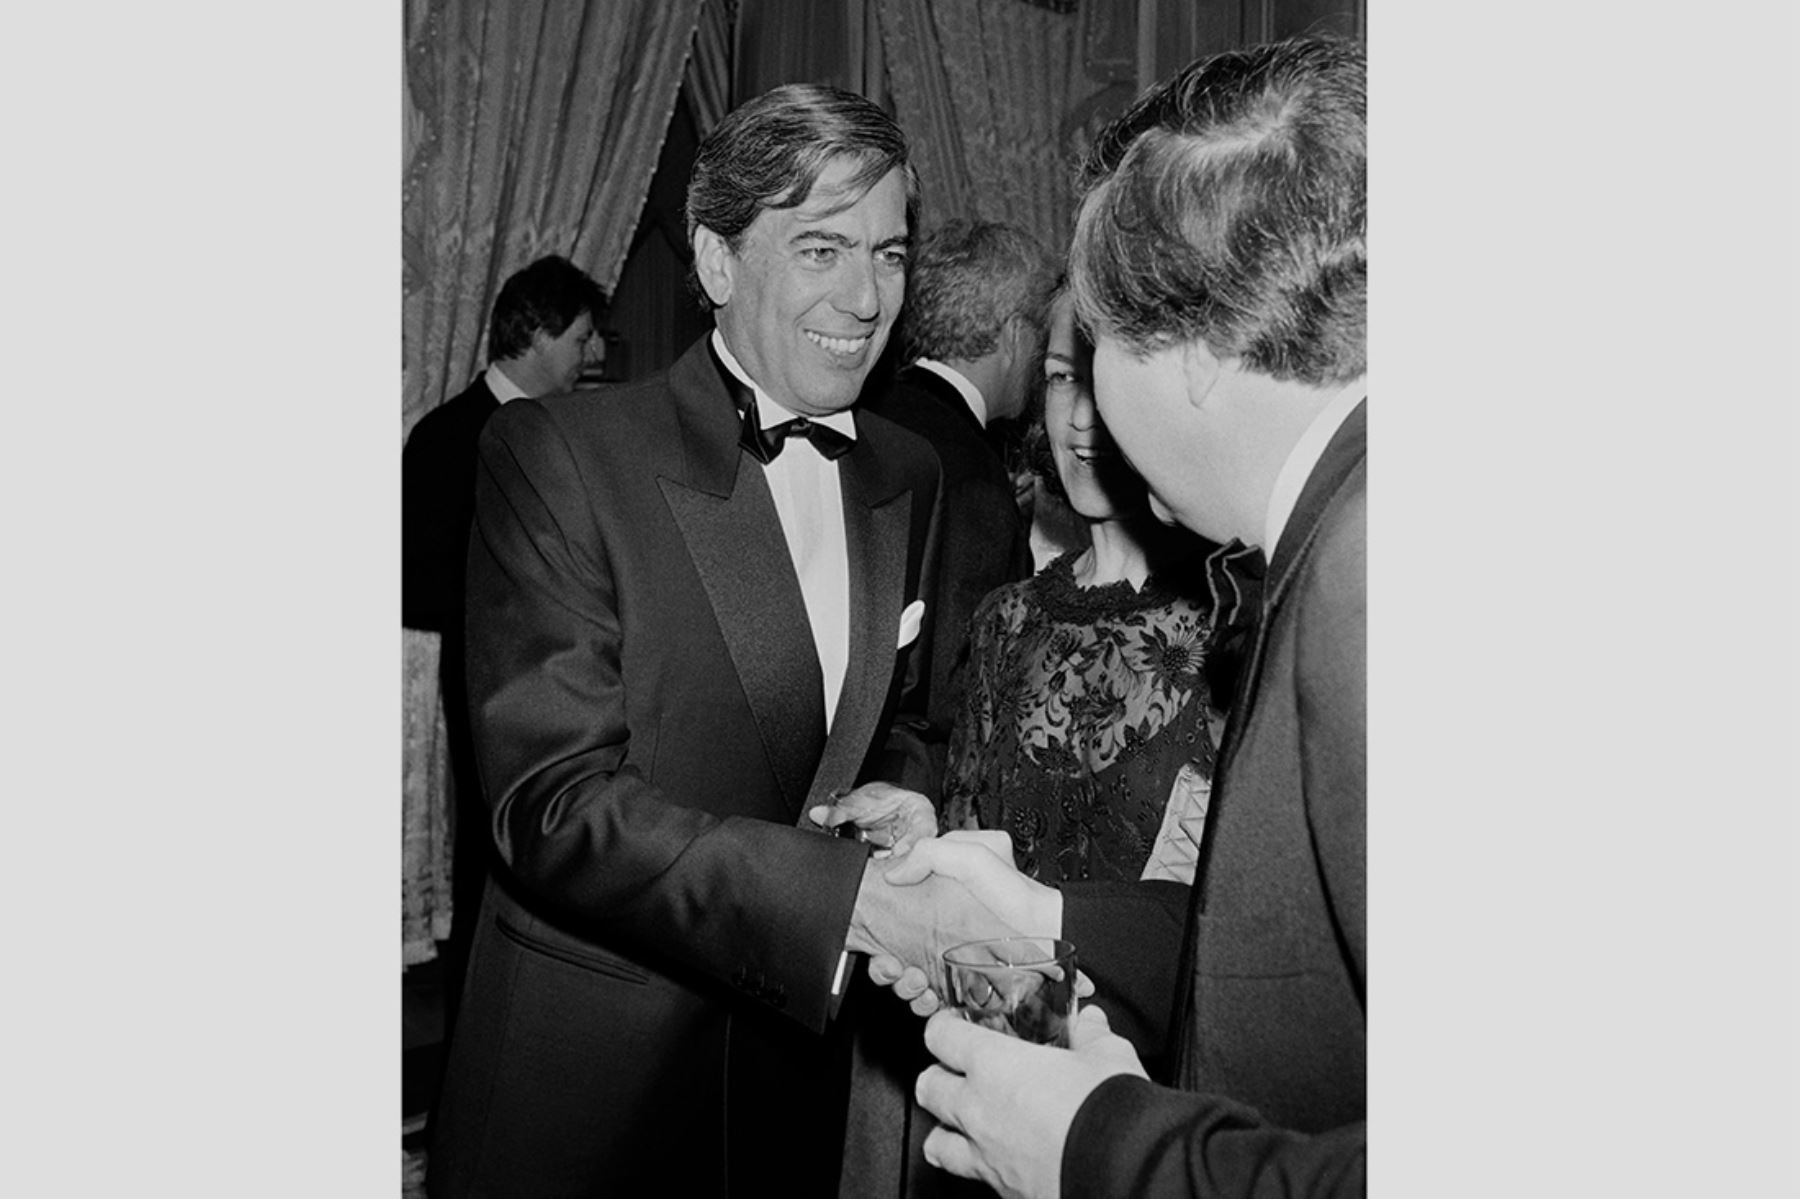 El escritor Mario Vargas Llosa luego de recibir el Premio Ritz-Hemingway, el 29 de marzo de 1985, otorgado  en el Hotel Ritz de París, antiguo lugar frecuentado por Hemingway. Vargas Llosa fue homenajeado por su novela "La guerra del fin del mundo". Foto: AFP